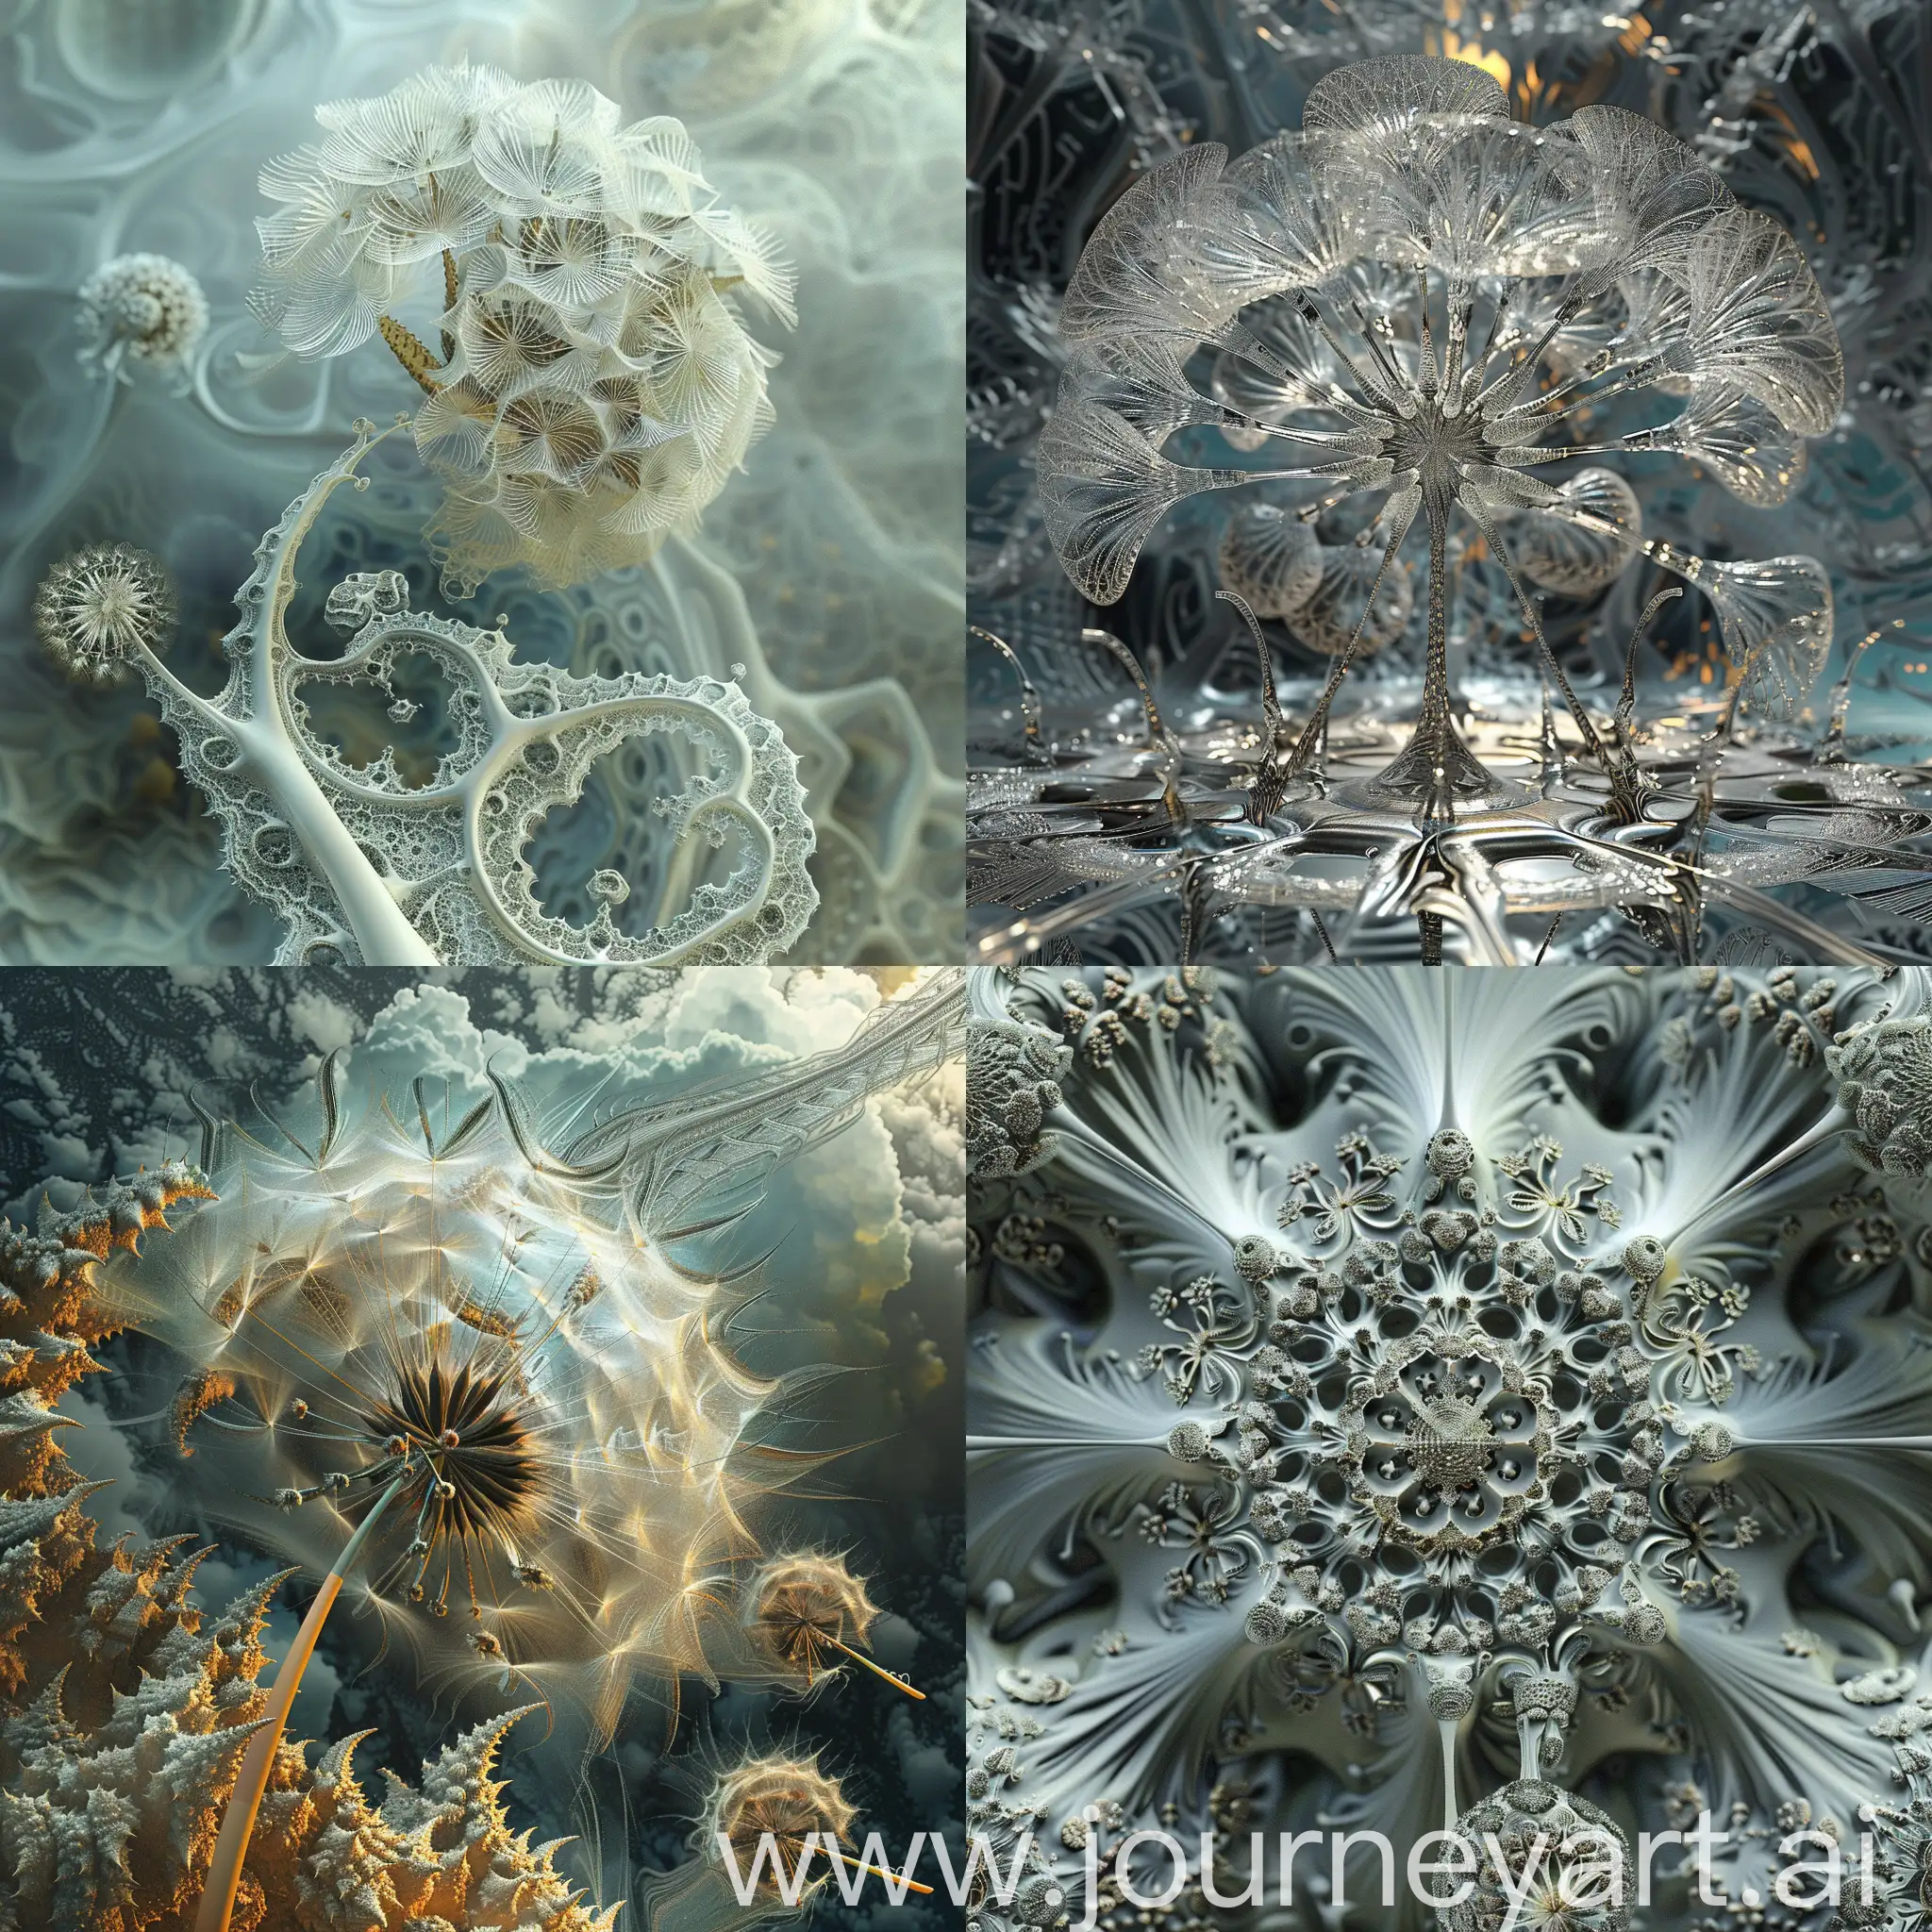 digital fractal artwork dandelion Mandelbulb 3D 191.